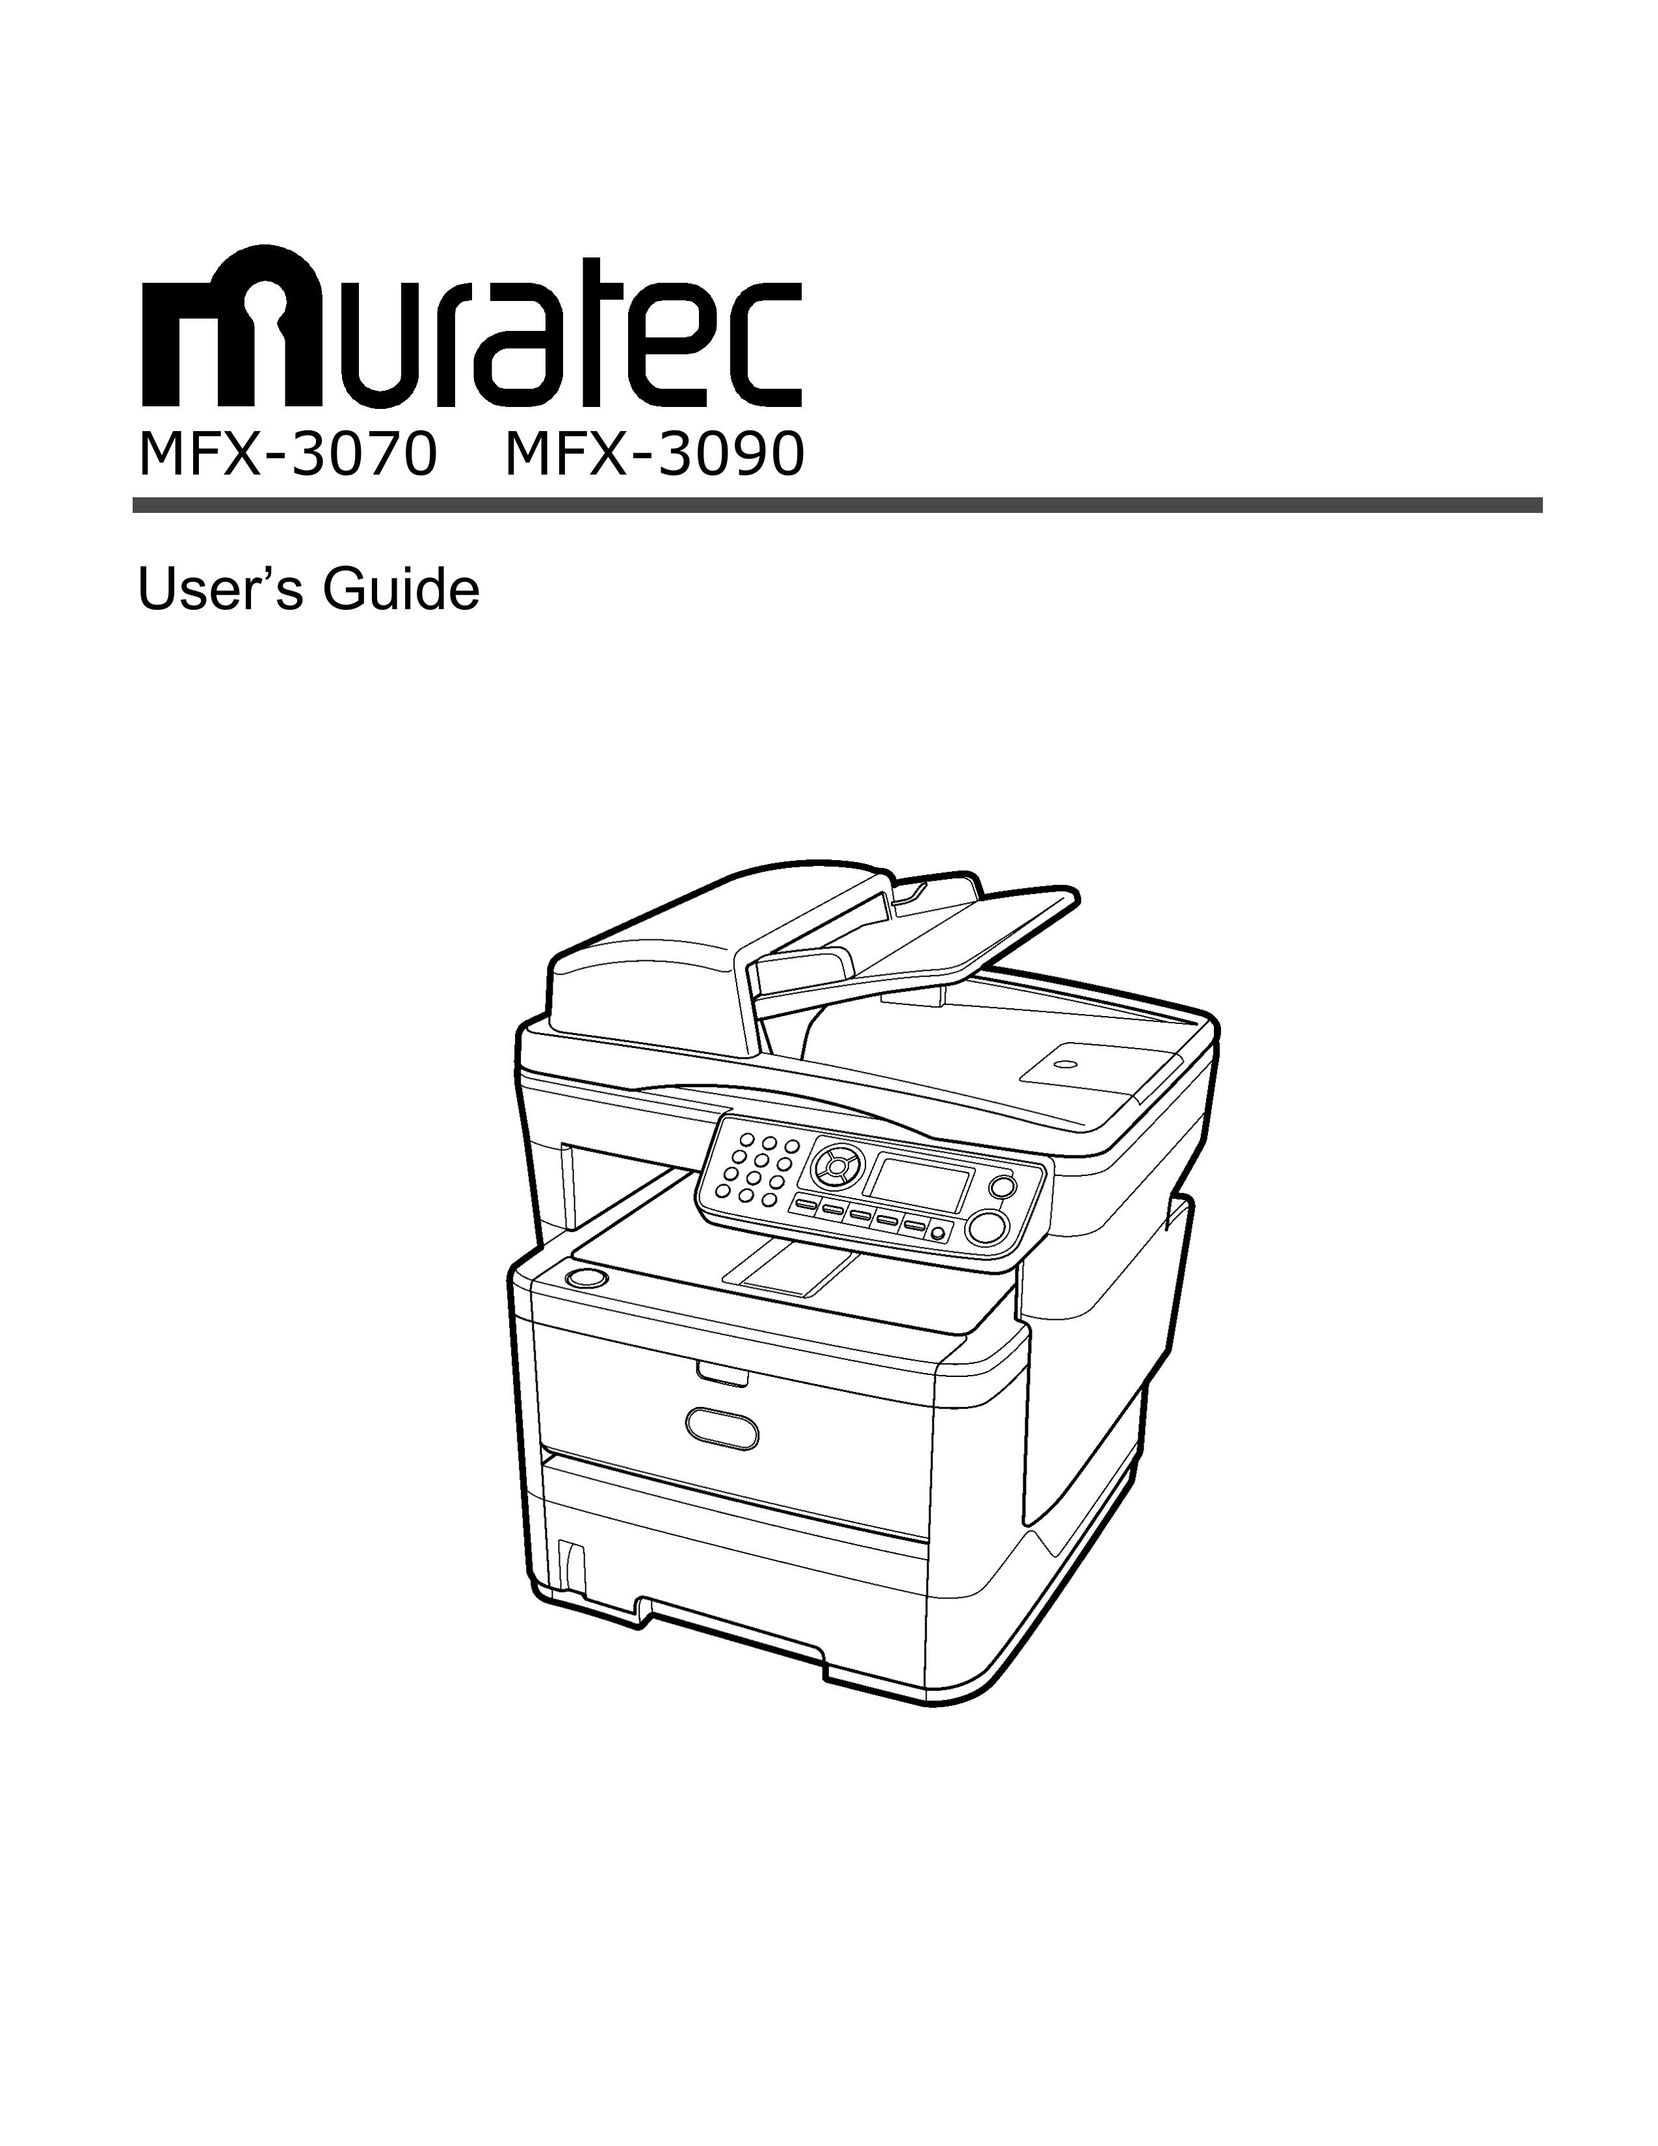 Muratec MFX-3070 All in One Printer User Manual